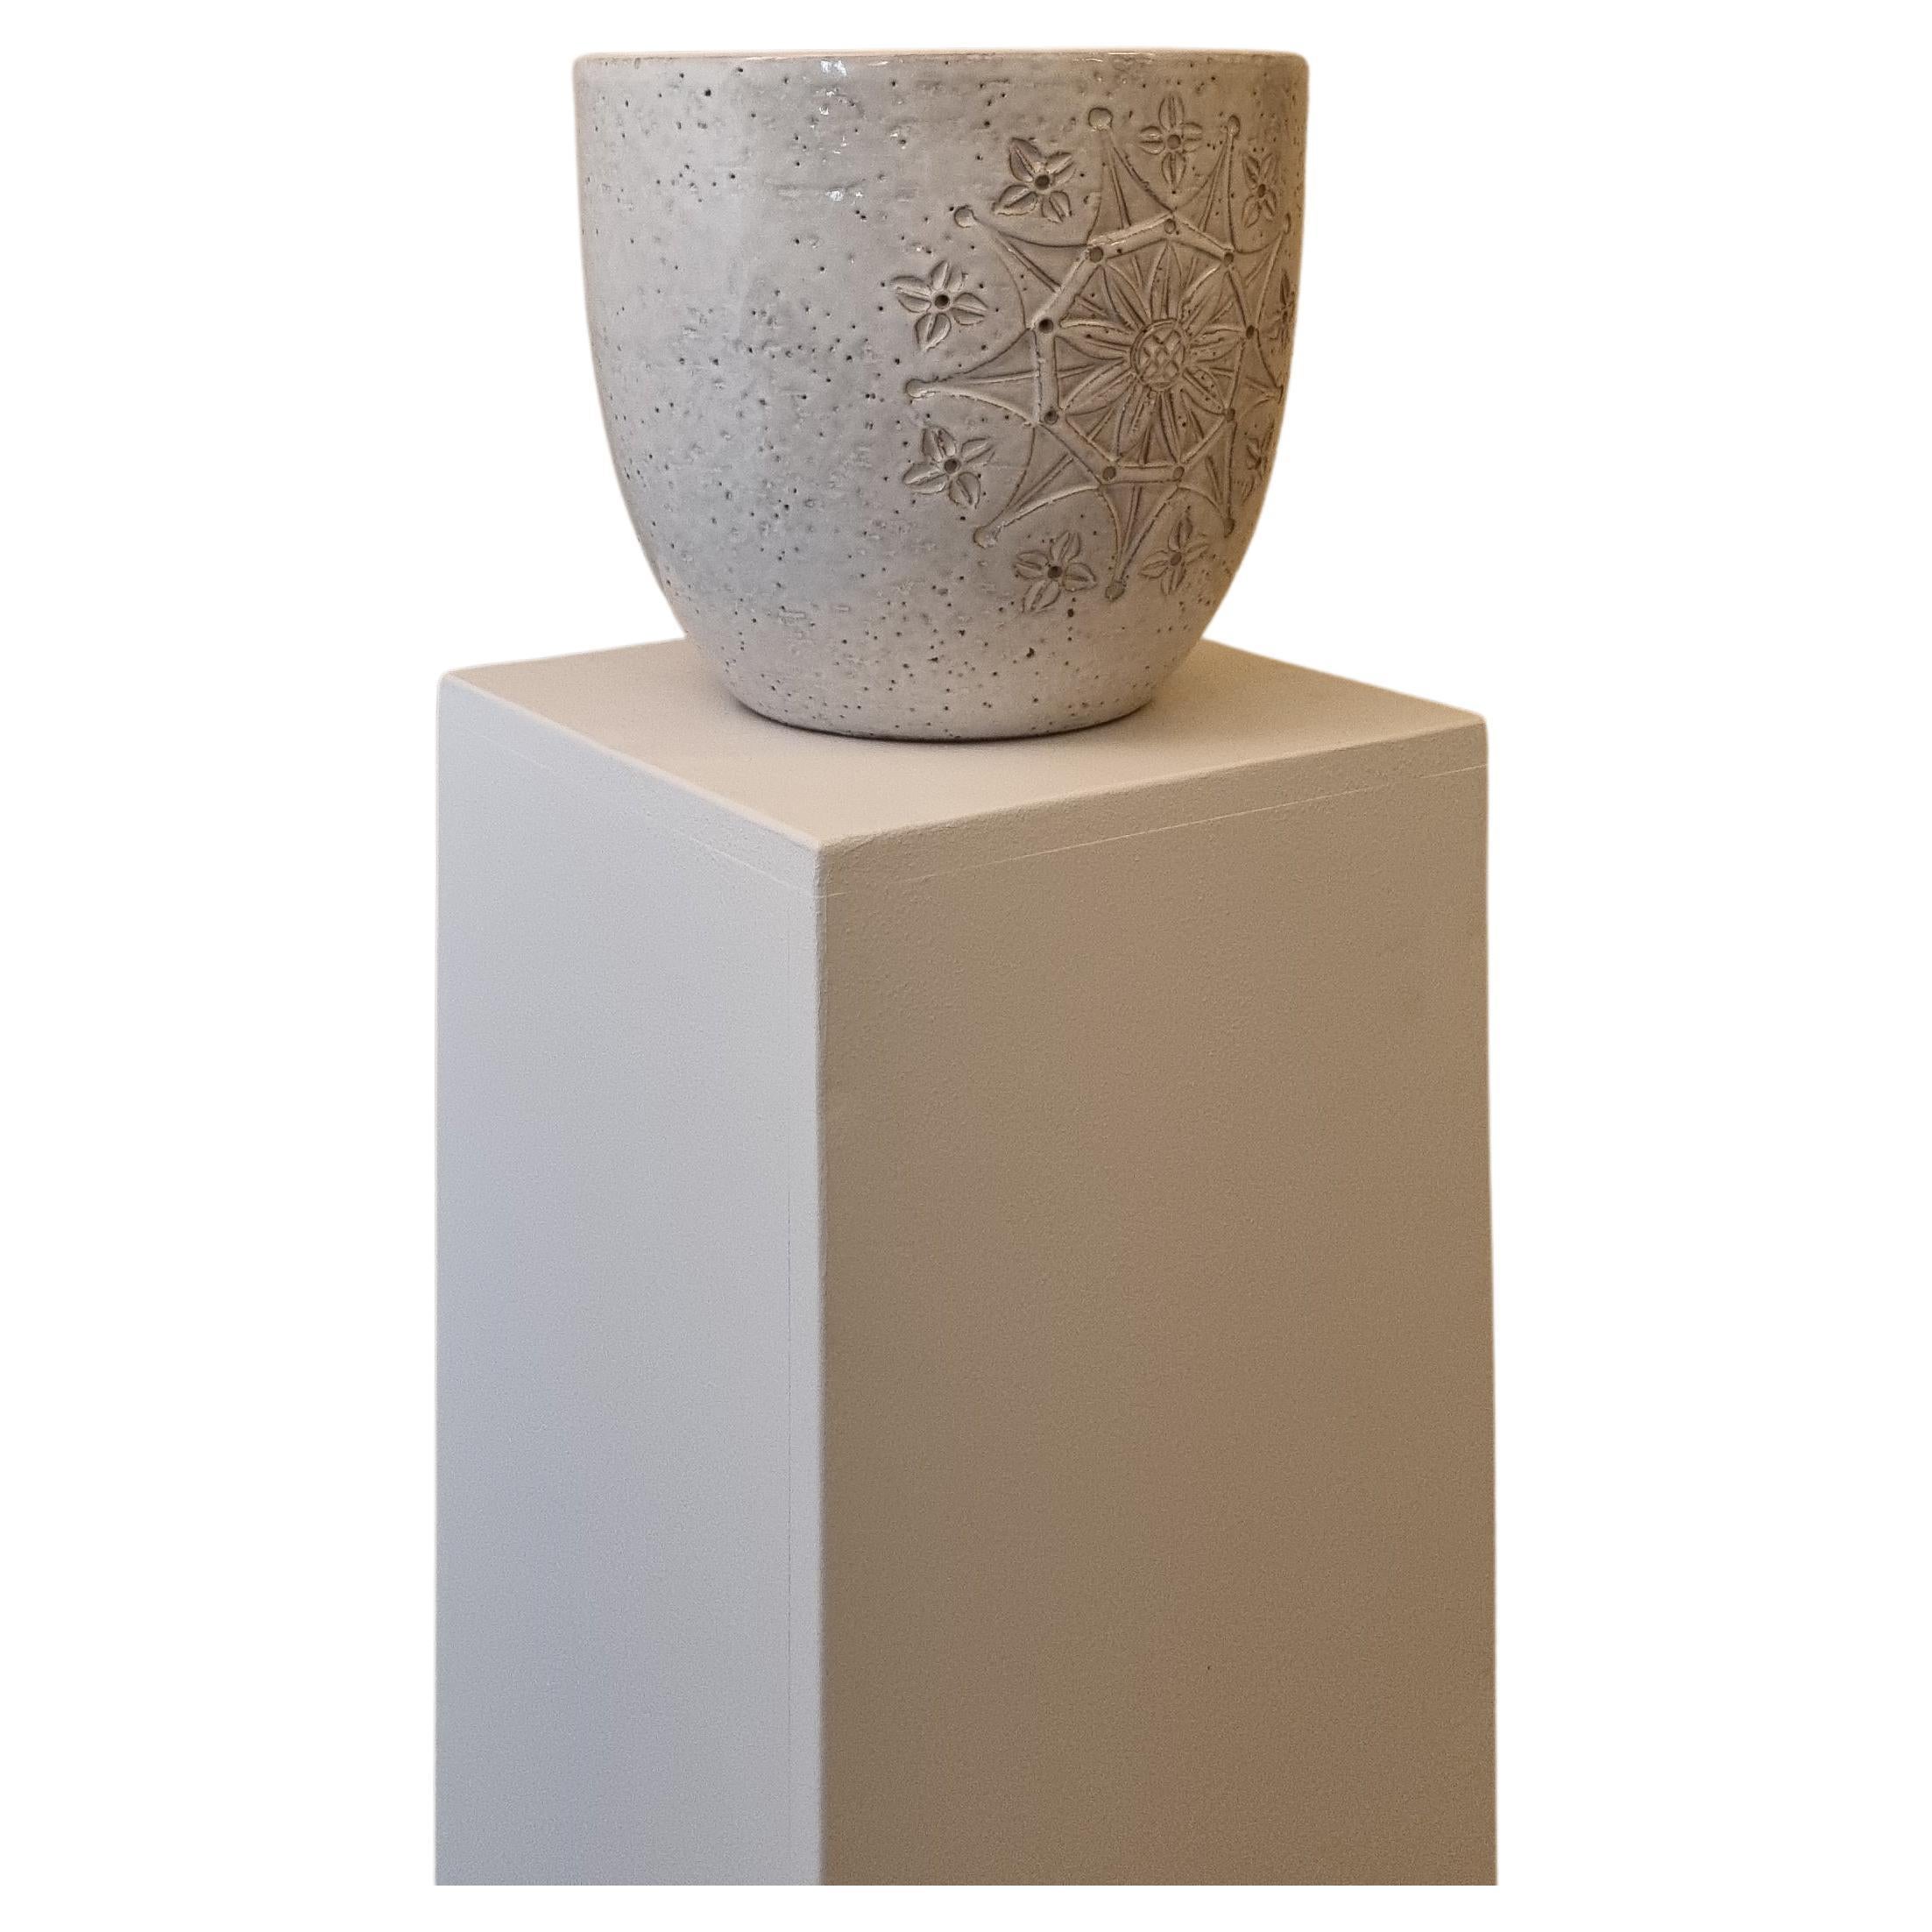 Siviglia Ceramic planter by Aldo Londi for Ceramiche Bitossi Montelupo, 60s. 